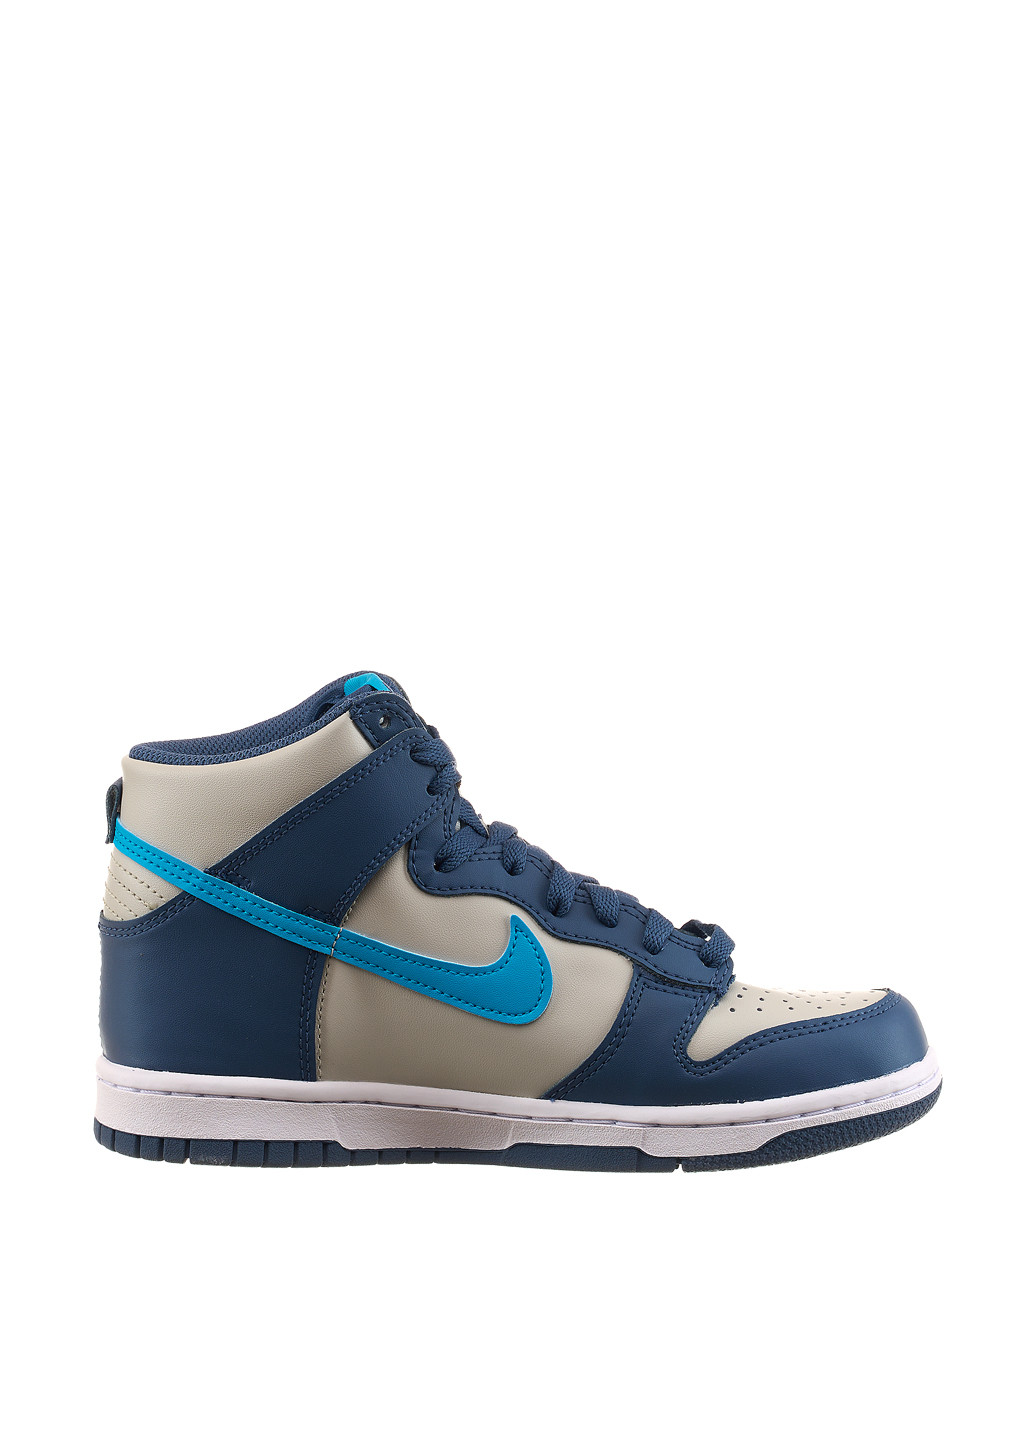 Цветные демисезонные кроссовки db2179-006_2024 Nike Dunk High Light Bone Diffused Blue Gs